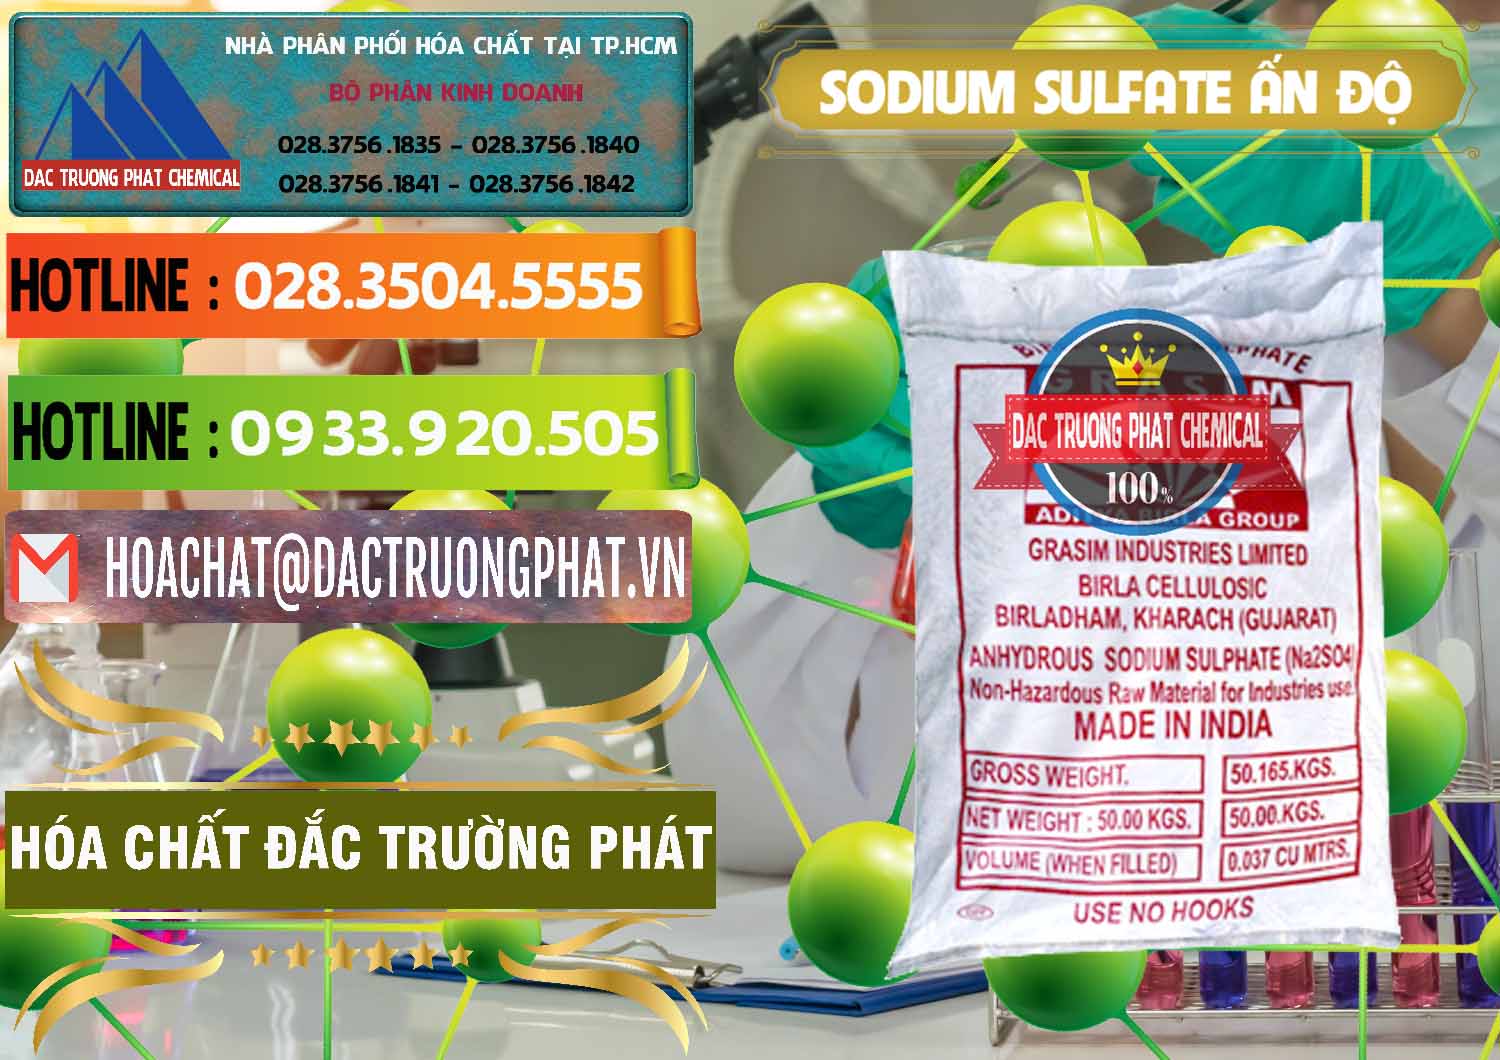 Bán - phân phối Sodium Sulphate - Muối Sunfat Na2SO4 Aditya Birla Grasim Ấn Độ India - 0462 - Kinh doanh & phân phối hóa chất tại TP.HCM - cungcaphoachat.com.vn